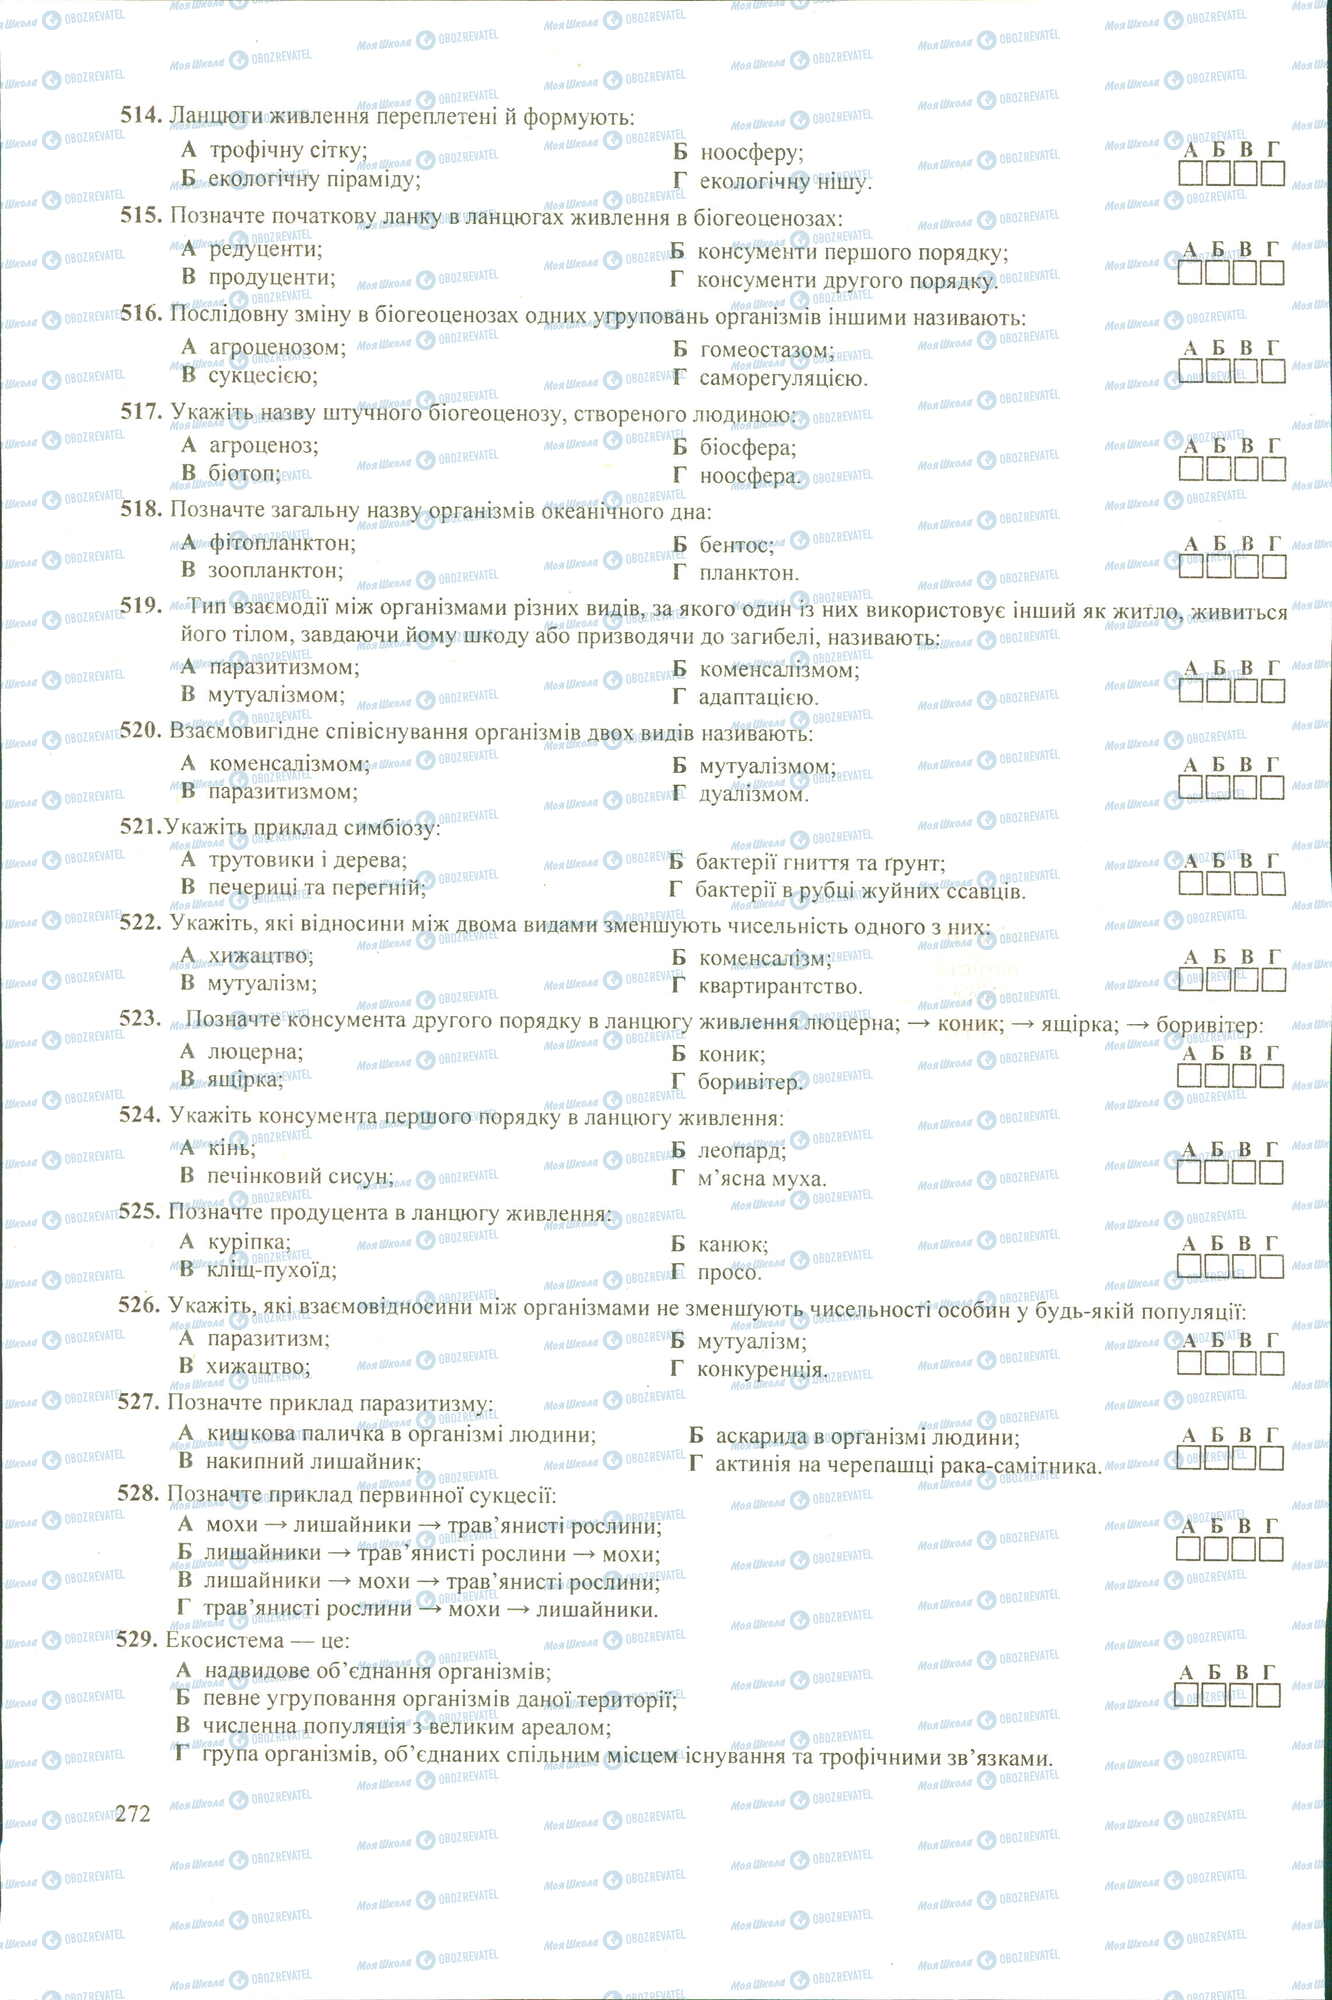 ЗНО Биология 11 класс страница 514-529